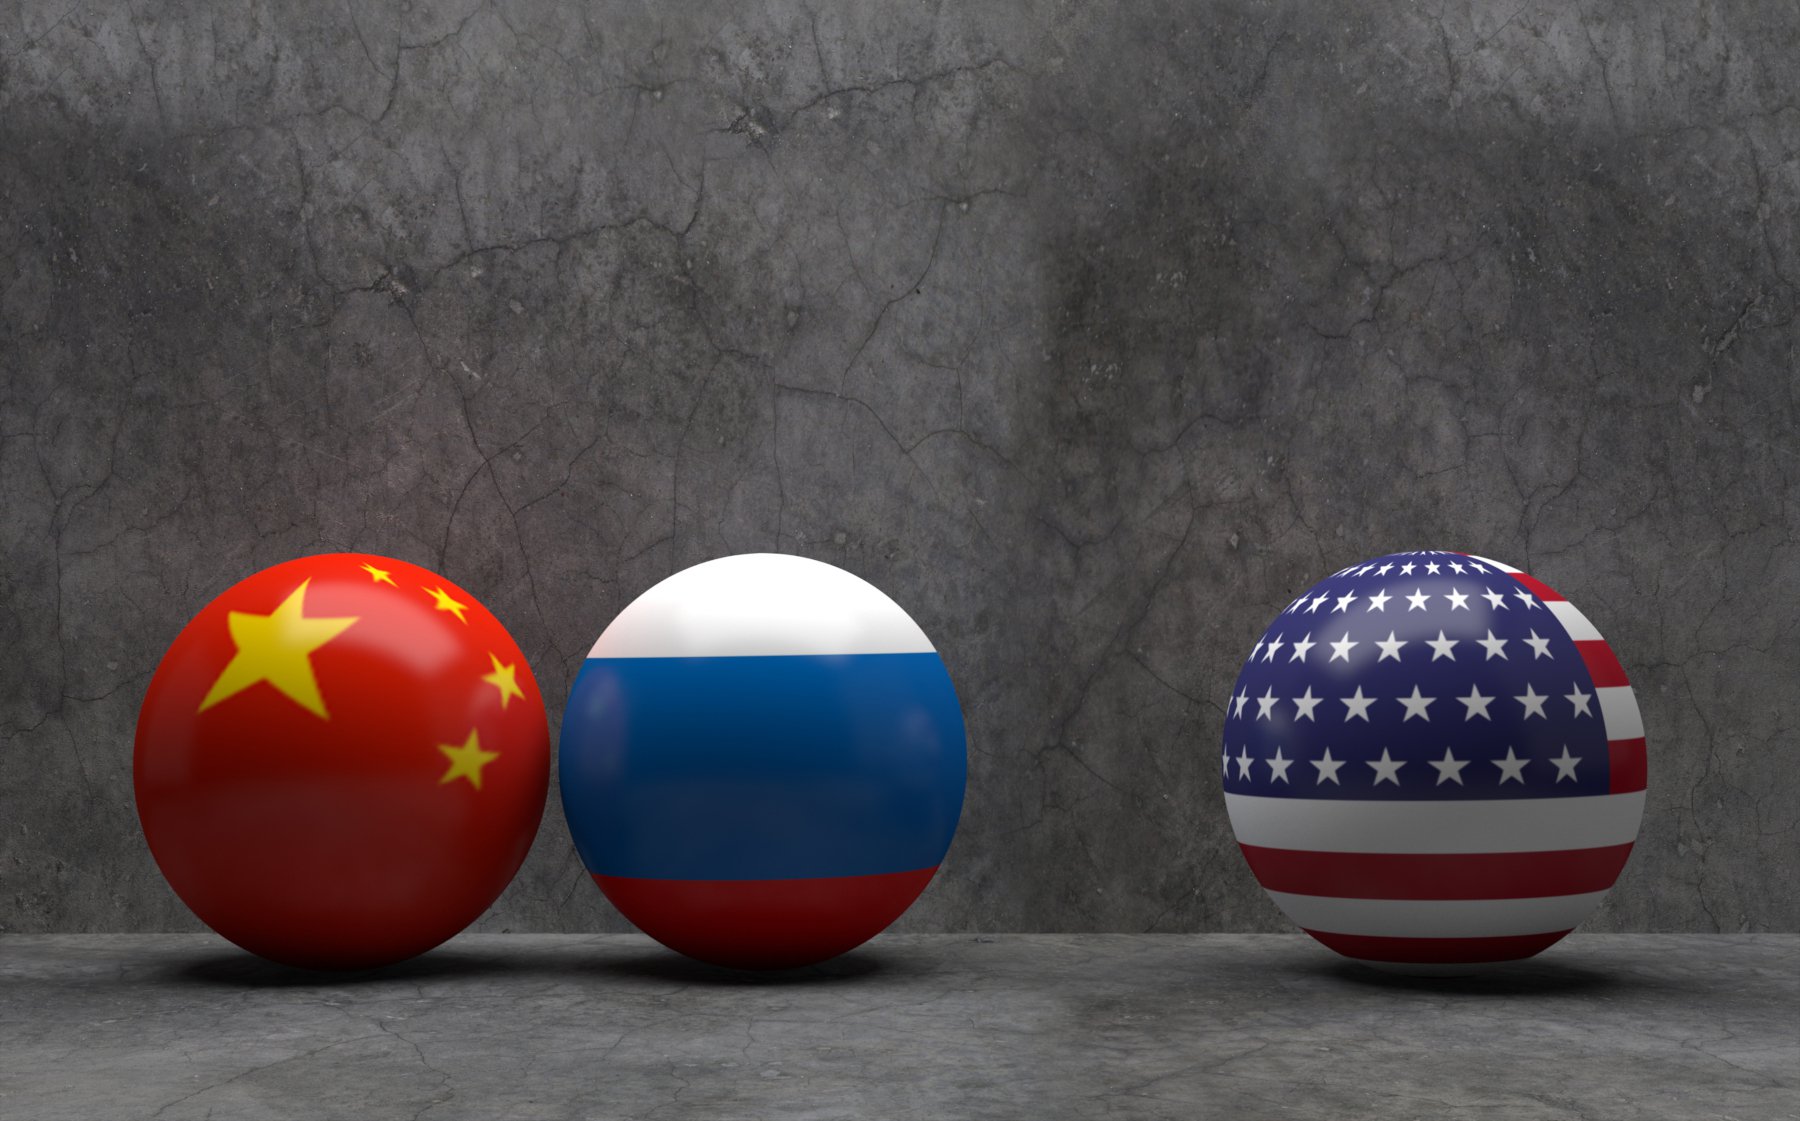 Κίνα – Ρωσία: Το τεράστιο μειονέκτημα του στρατού τους σε σχέση με τις ΗΠΑ